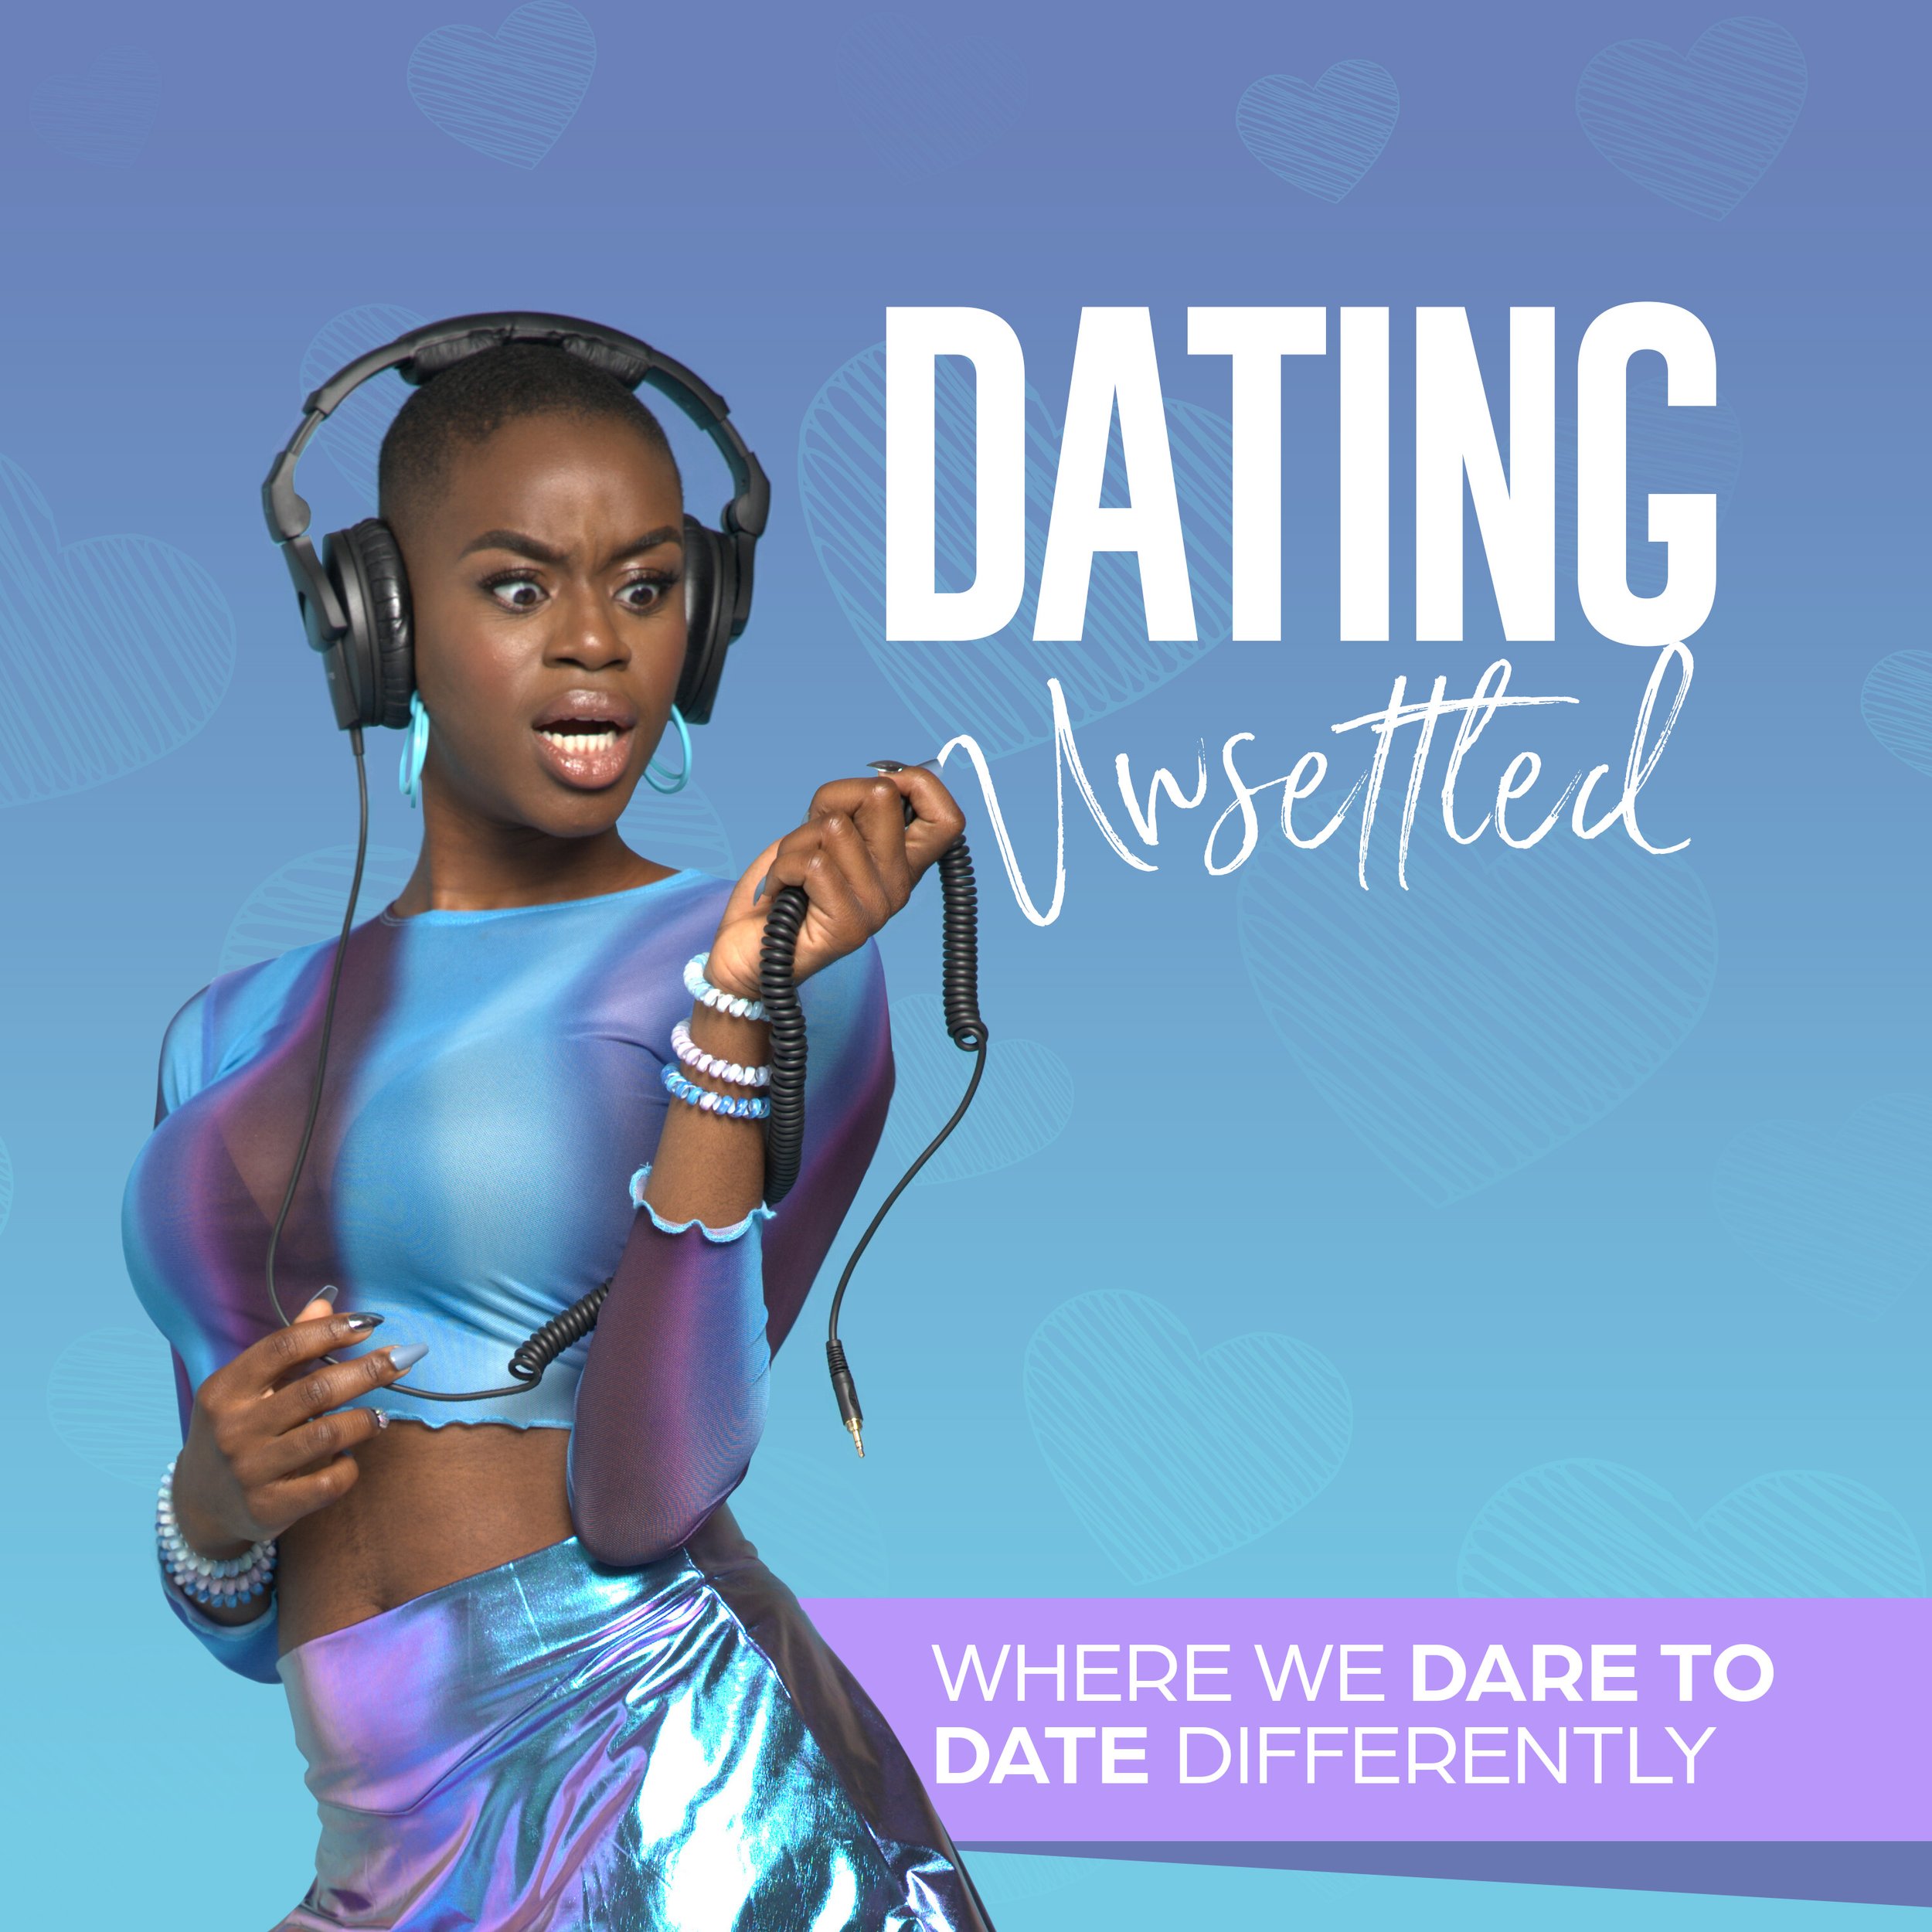 Dating_Unsettled_ver2111_.jpg